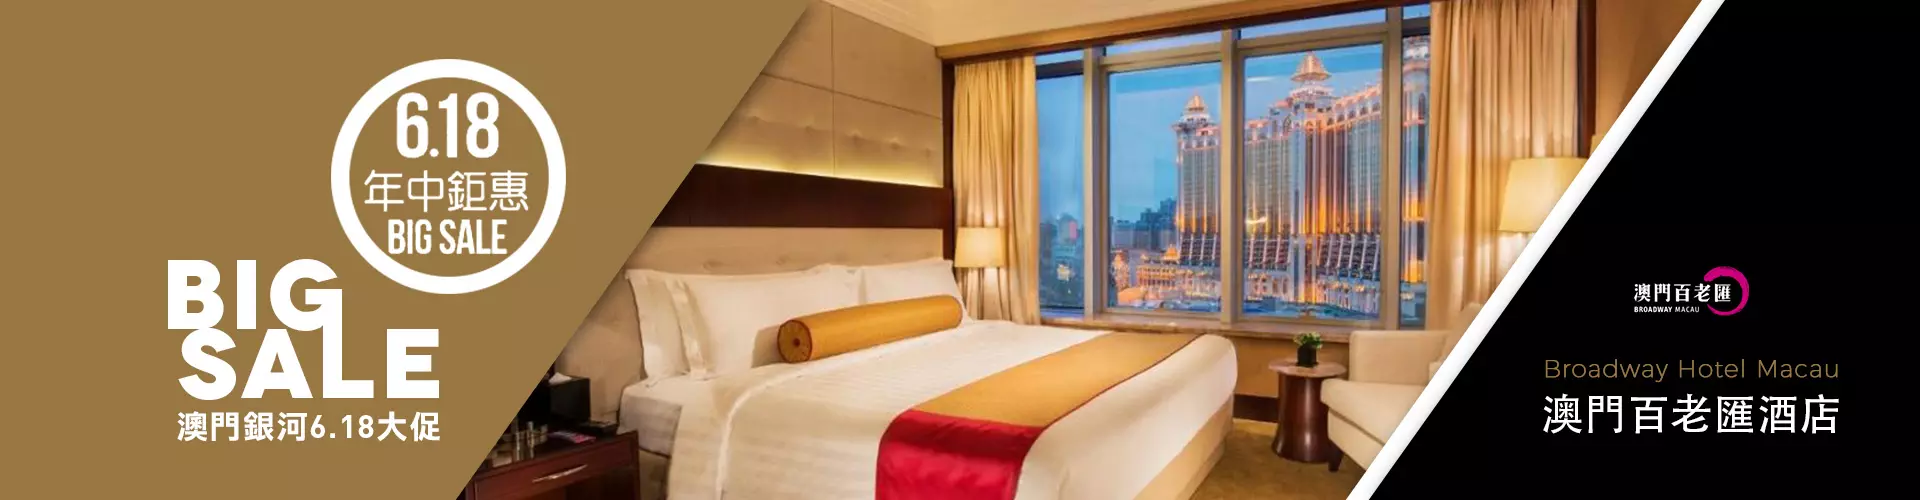 澳門百老匯酒店 Broadway Hotel Macau 